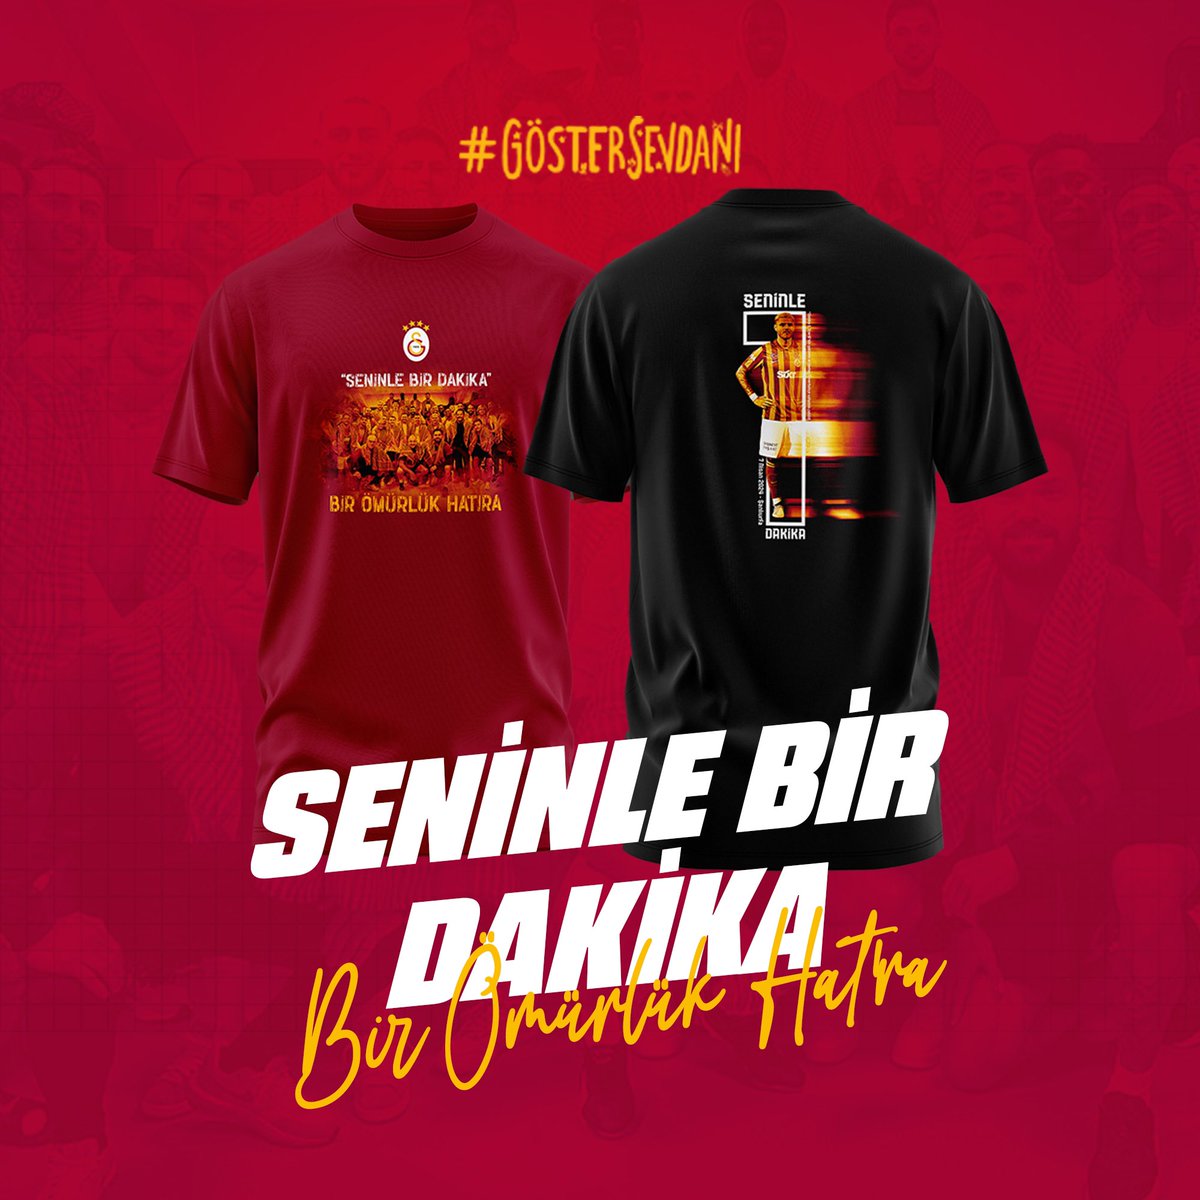 🟠🟢 Alanyaspor - Galatasaray 🟡🔴 8. Cekilisimiz için 8 adet Seninle bir dakika tshirt verilecektir. 🔶️Katılım sartlari 🔸️Takip et 🔸️RT yap 🔸️ Skor tahmini yaparken 3 adet arkadasini etiketle(skoru bilmen önemli degil)